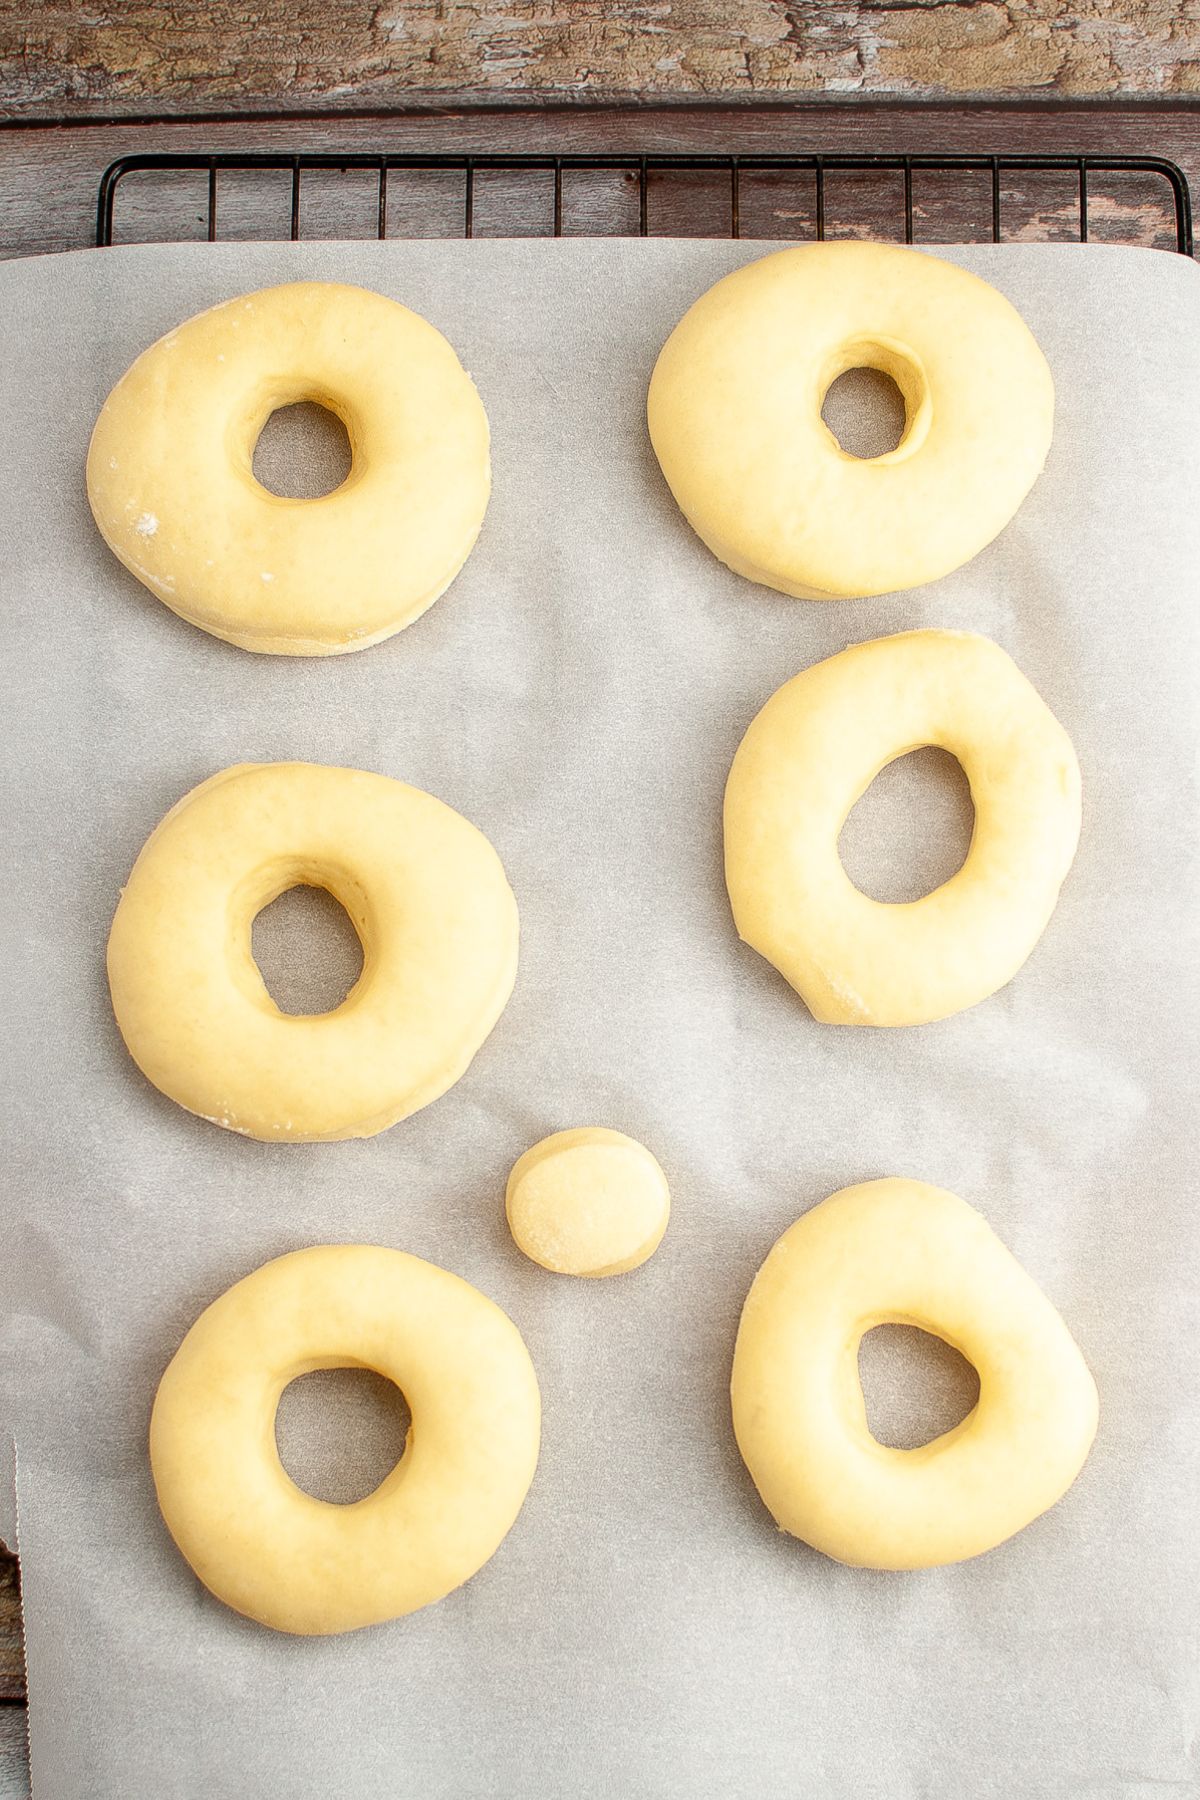 raw doughnuts rising on a baking sheet.